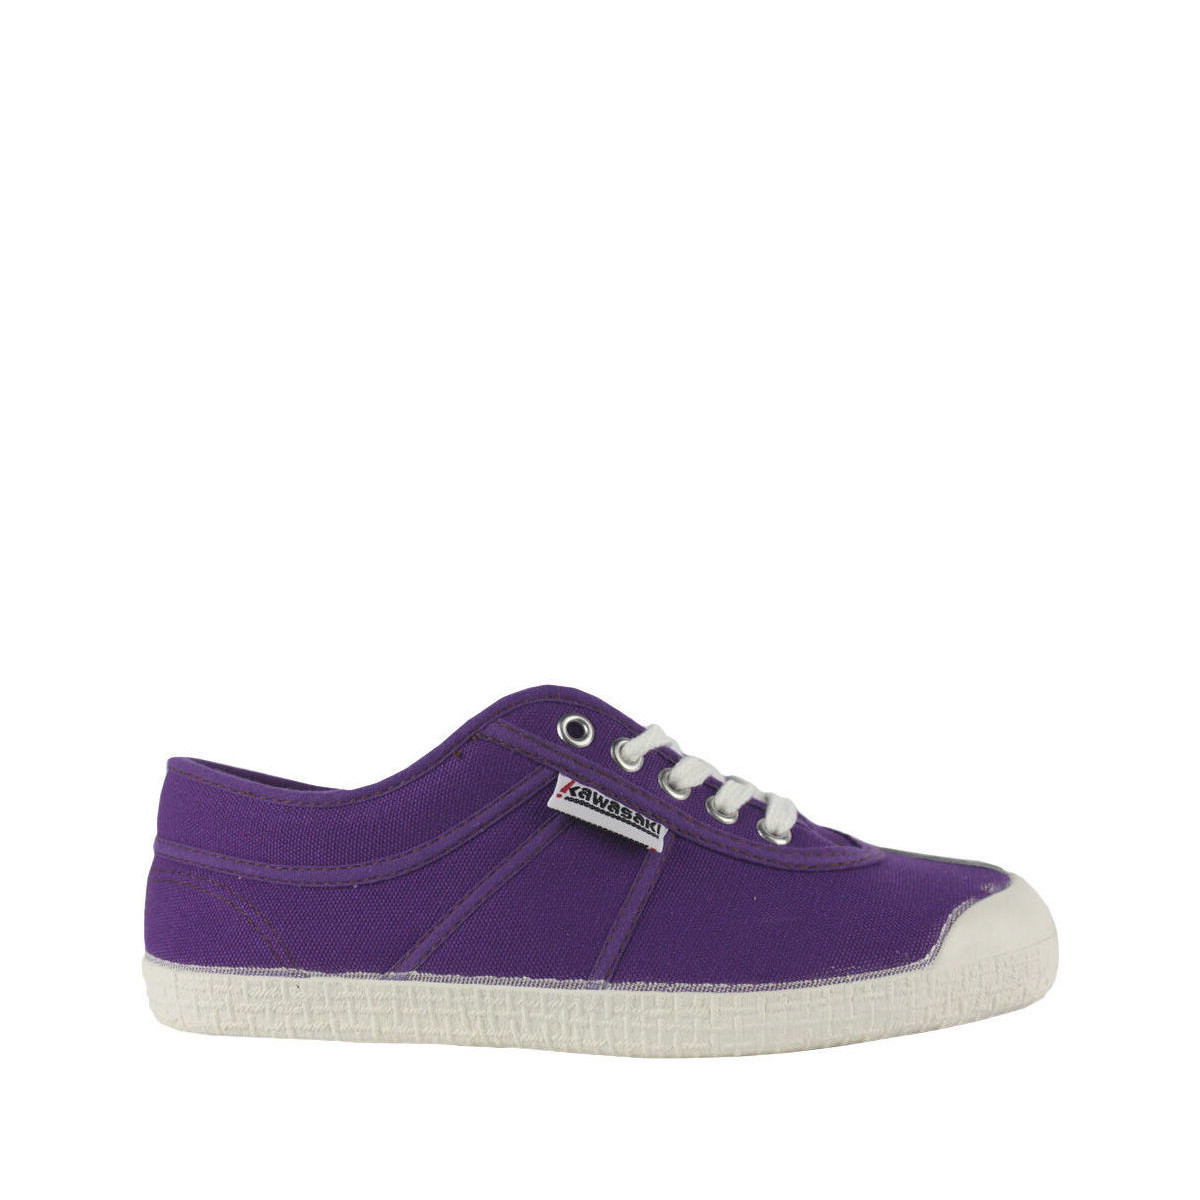 Pantofi Bărbați Sneakers Kawasaki Basic 23 Canvas Shoe K23B 73 Purple violet